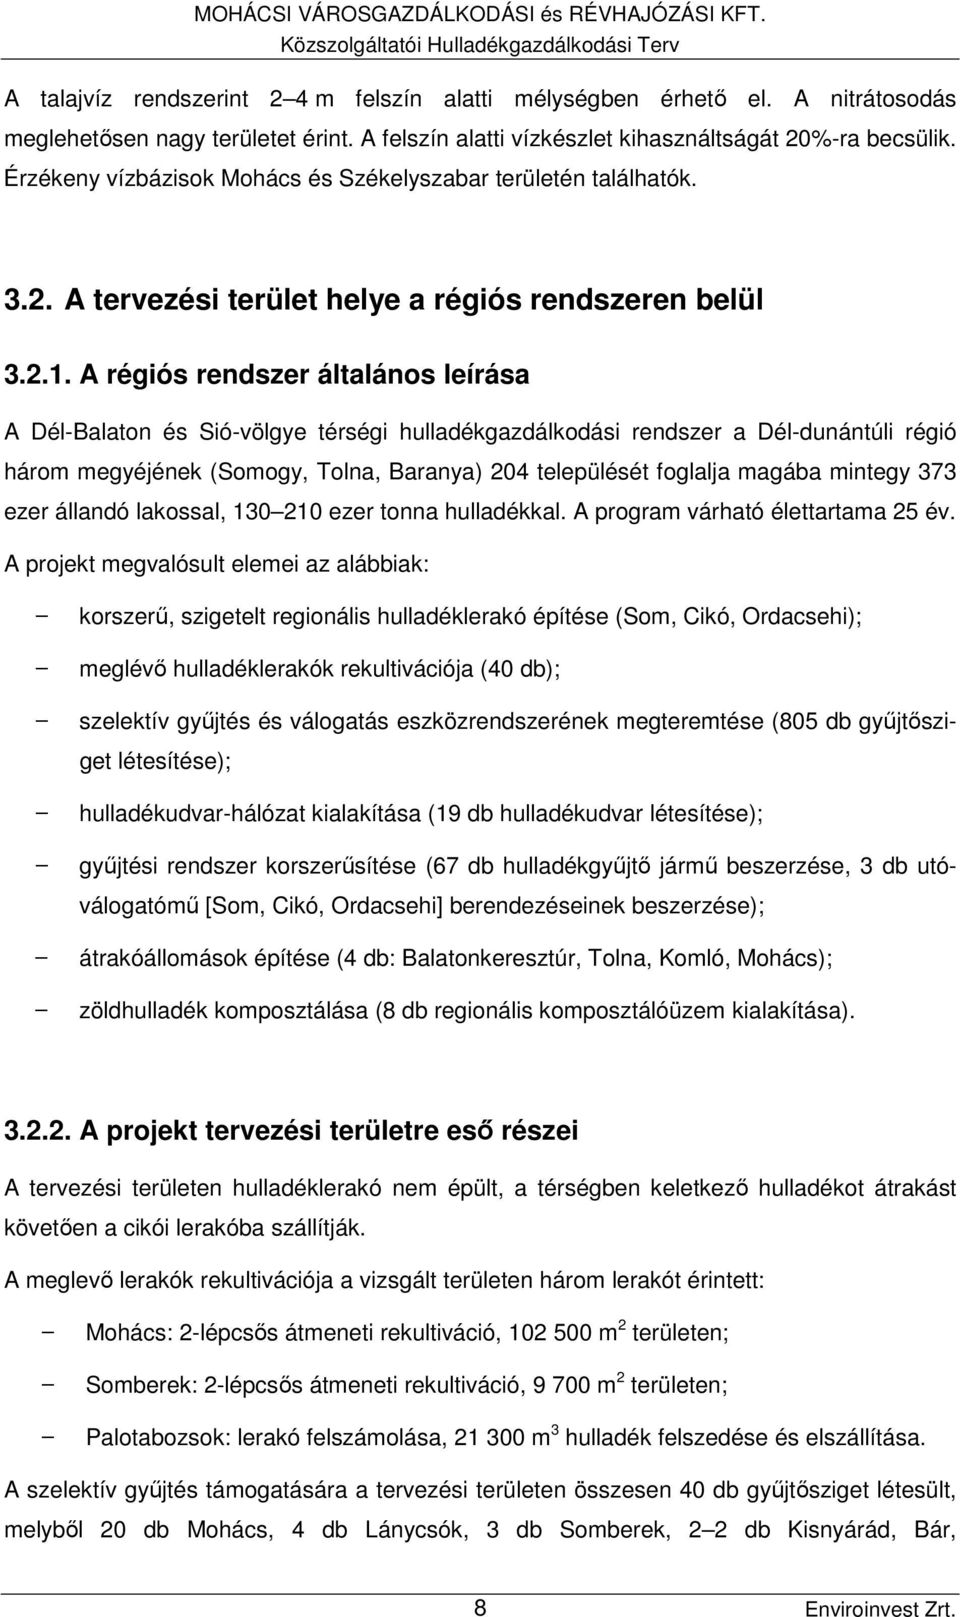 2.1. A régiós rendszer általános leírása A Dél-Balaton és Sió-völgye térségi hulladékgazdálkodási rendszer a Dél-dunántúli régió három megyéjének (Somogy, Tolna, Baranya) 204 települését foglalja